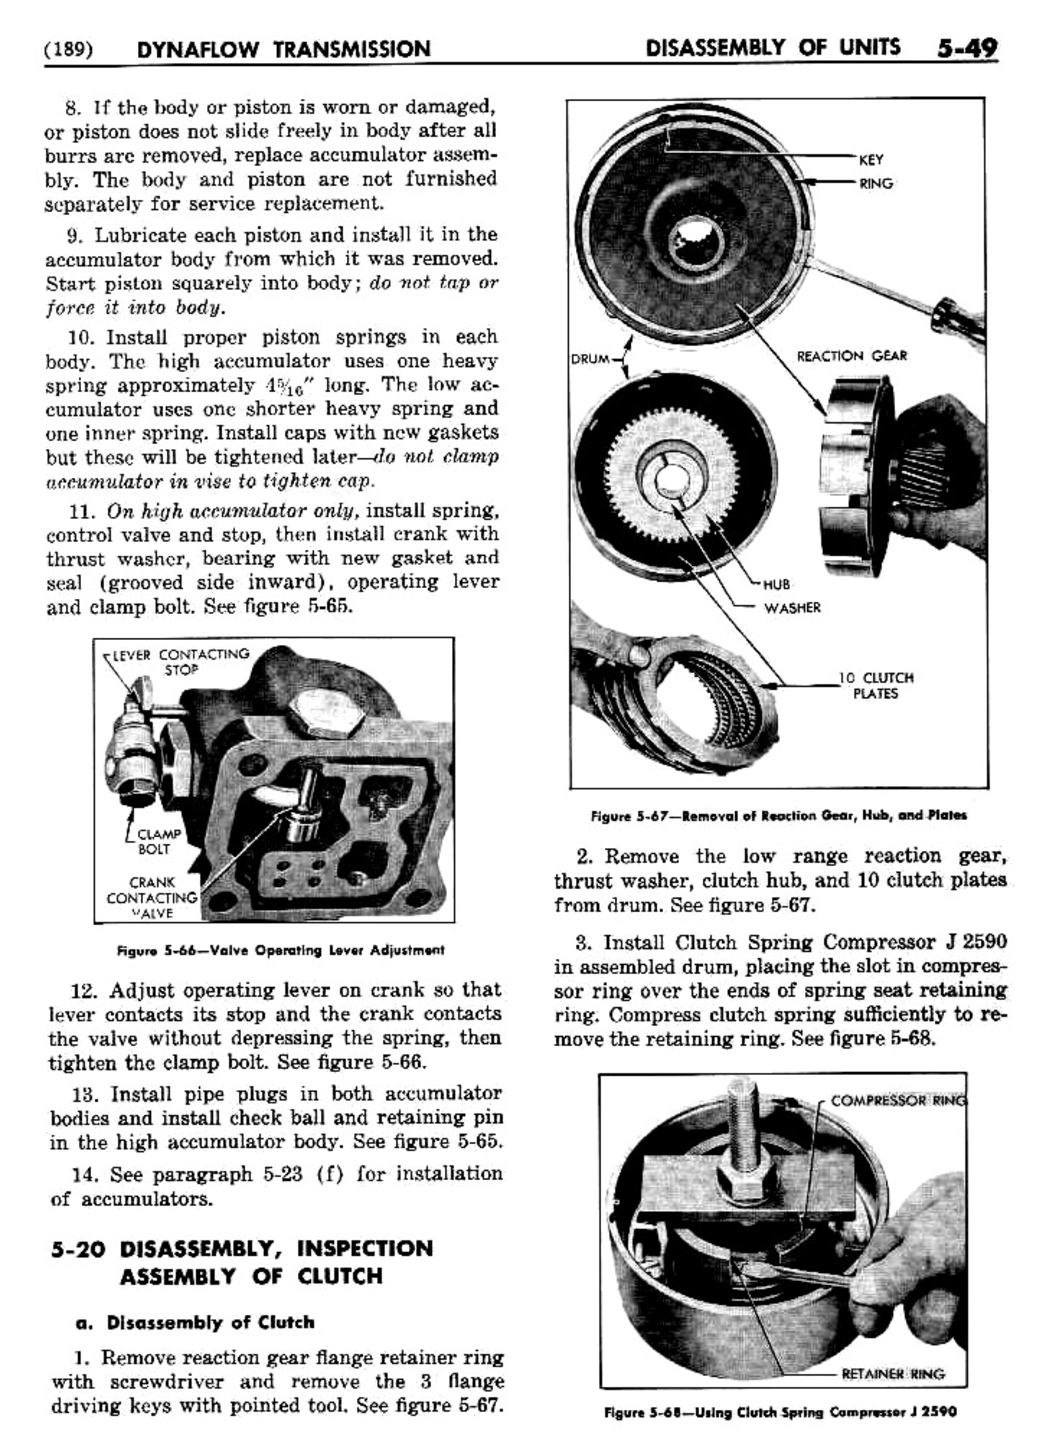 n_06 1955 Buick Shop Manual - Dynaflow-049-049.jpg